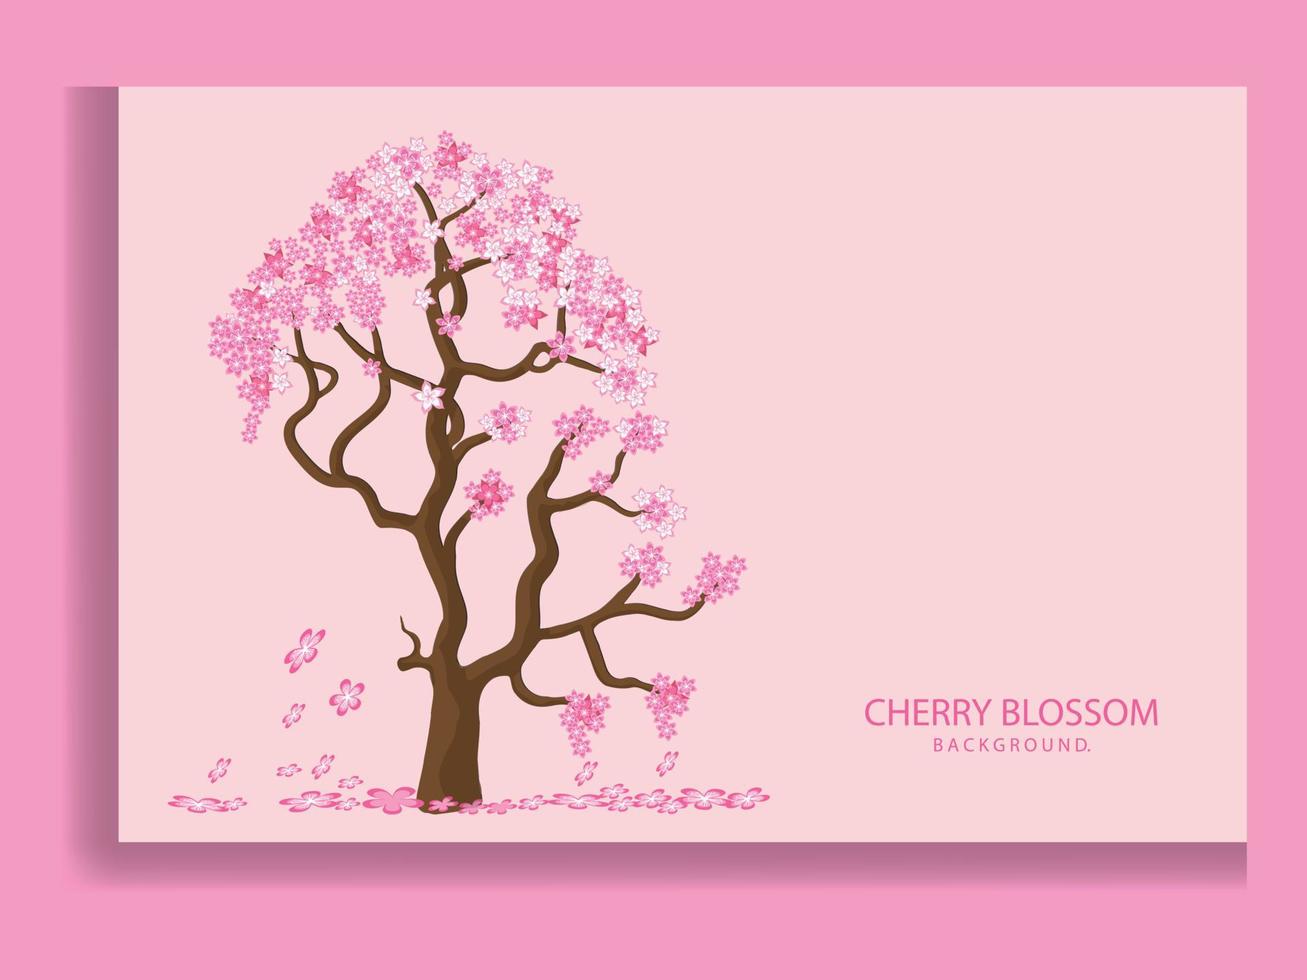 Sakura-Blütenzweig. fallende Blütenblätter, Blumen. isolierte fliegende realistische japanische rosa kirsch- oder aprikosenblumenelemente fallen vektorhintergrund herunter. kirschblütenzweig, blütenblattillustration vektor